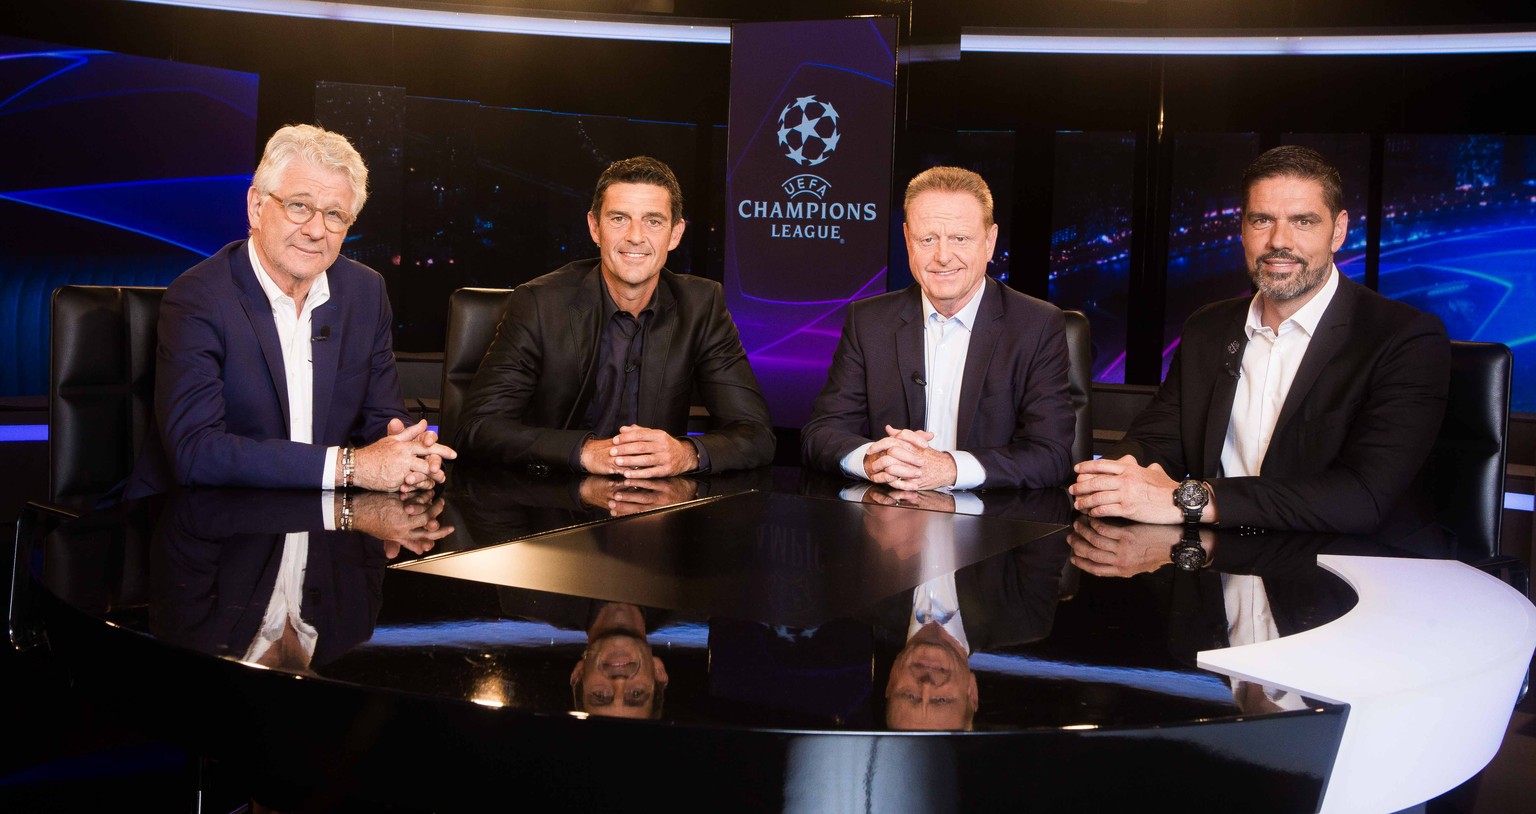 Das Experten-Team von Teleclub – alle Studiosendungen der Champions League finden mit Publikum statt. 